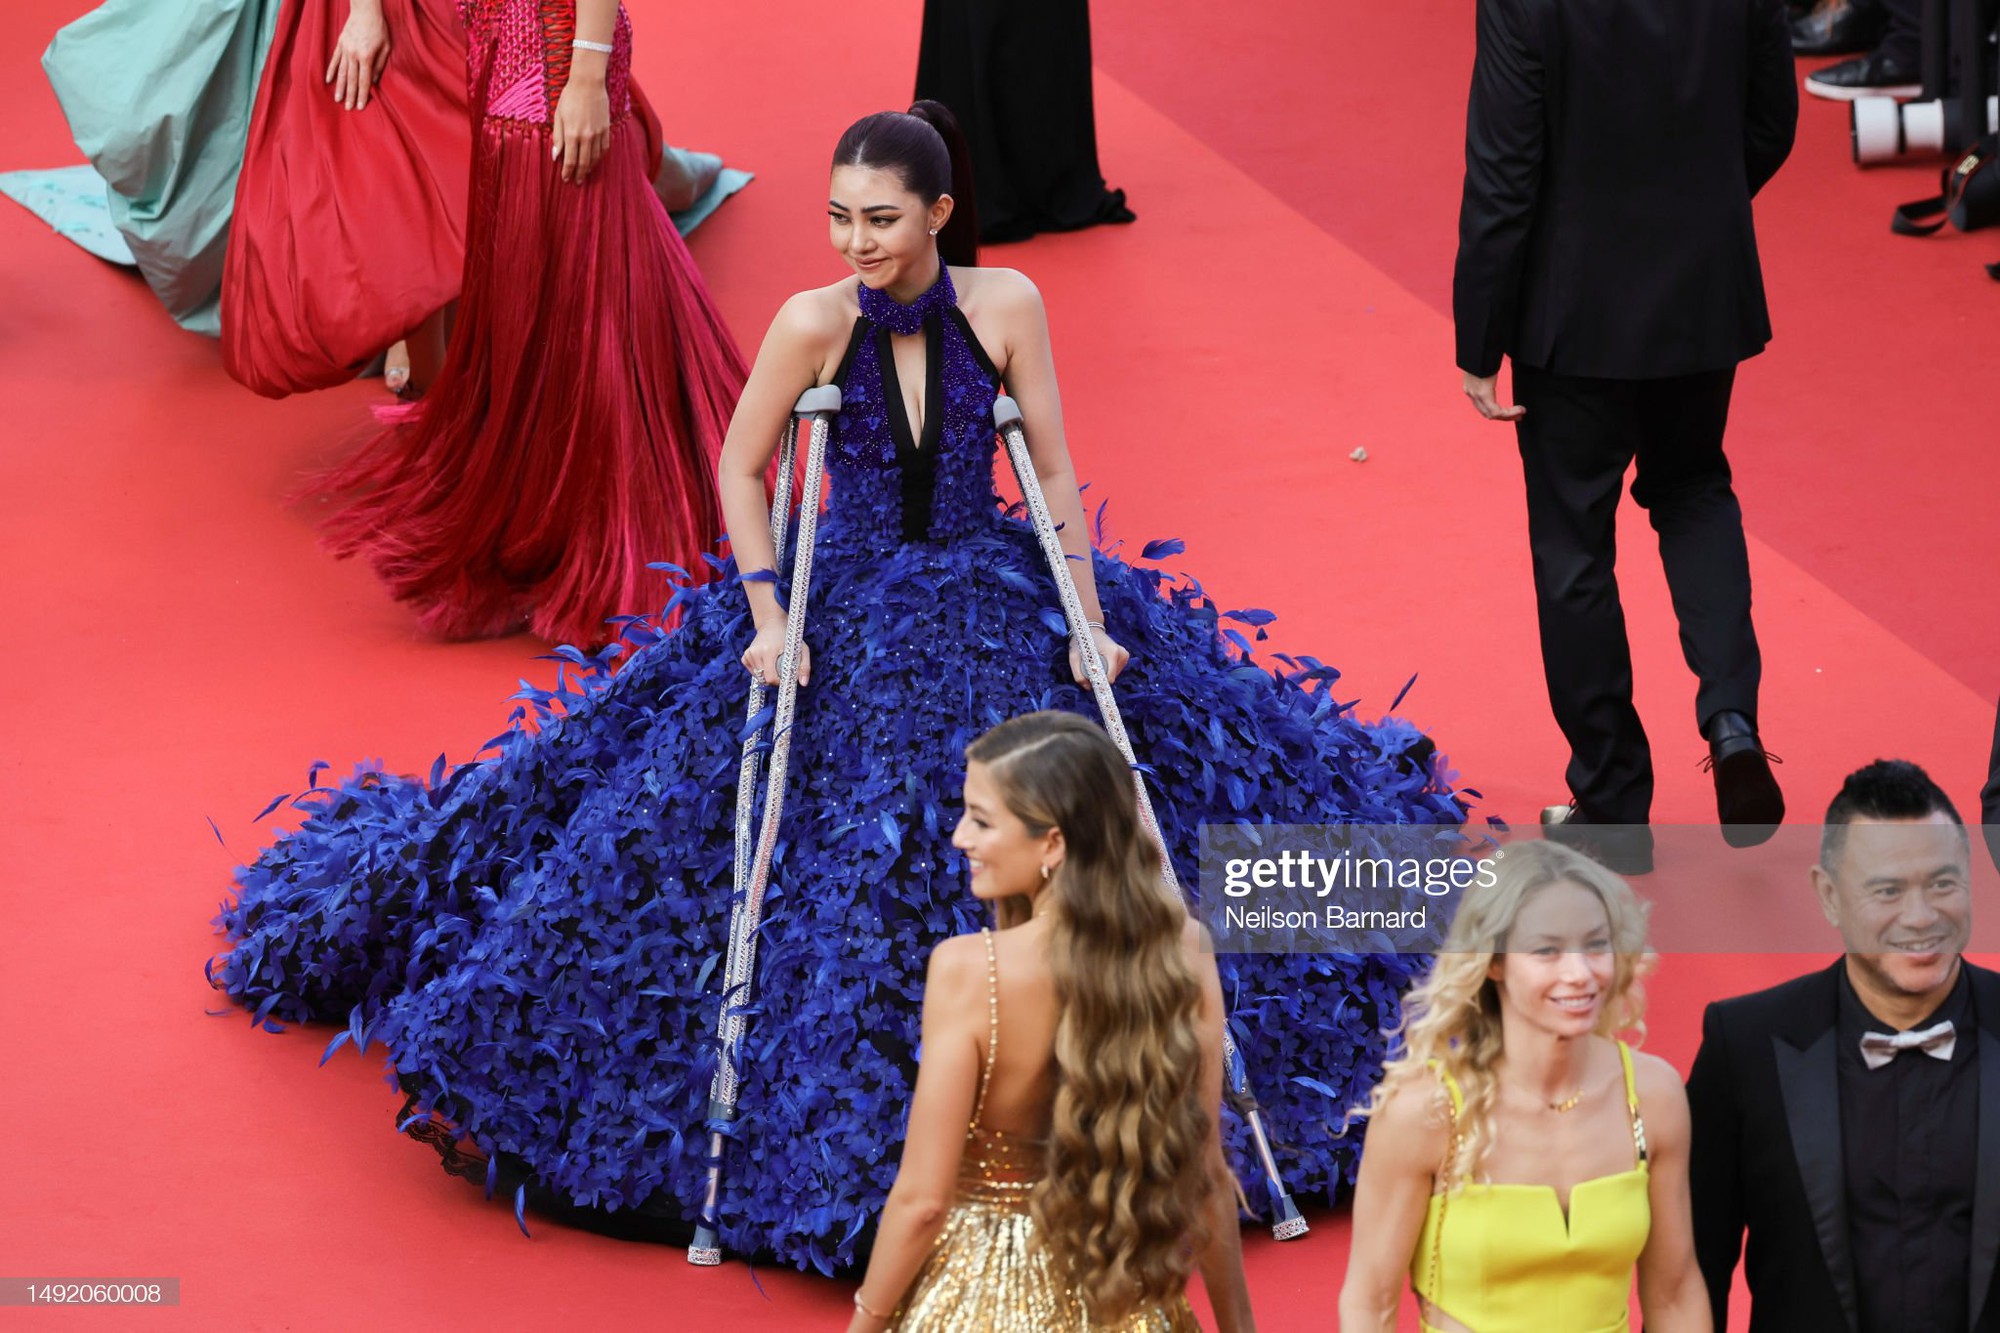 Thảm đỏ Cannes 2023 ngày 6: Jennifer Lawrence - Gigi Hadid đẹp choáng ngợp, Irina Shayk hở bạo lấn át dàn sao - Ảnh 19.